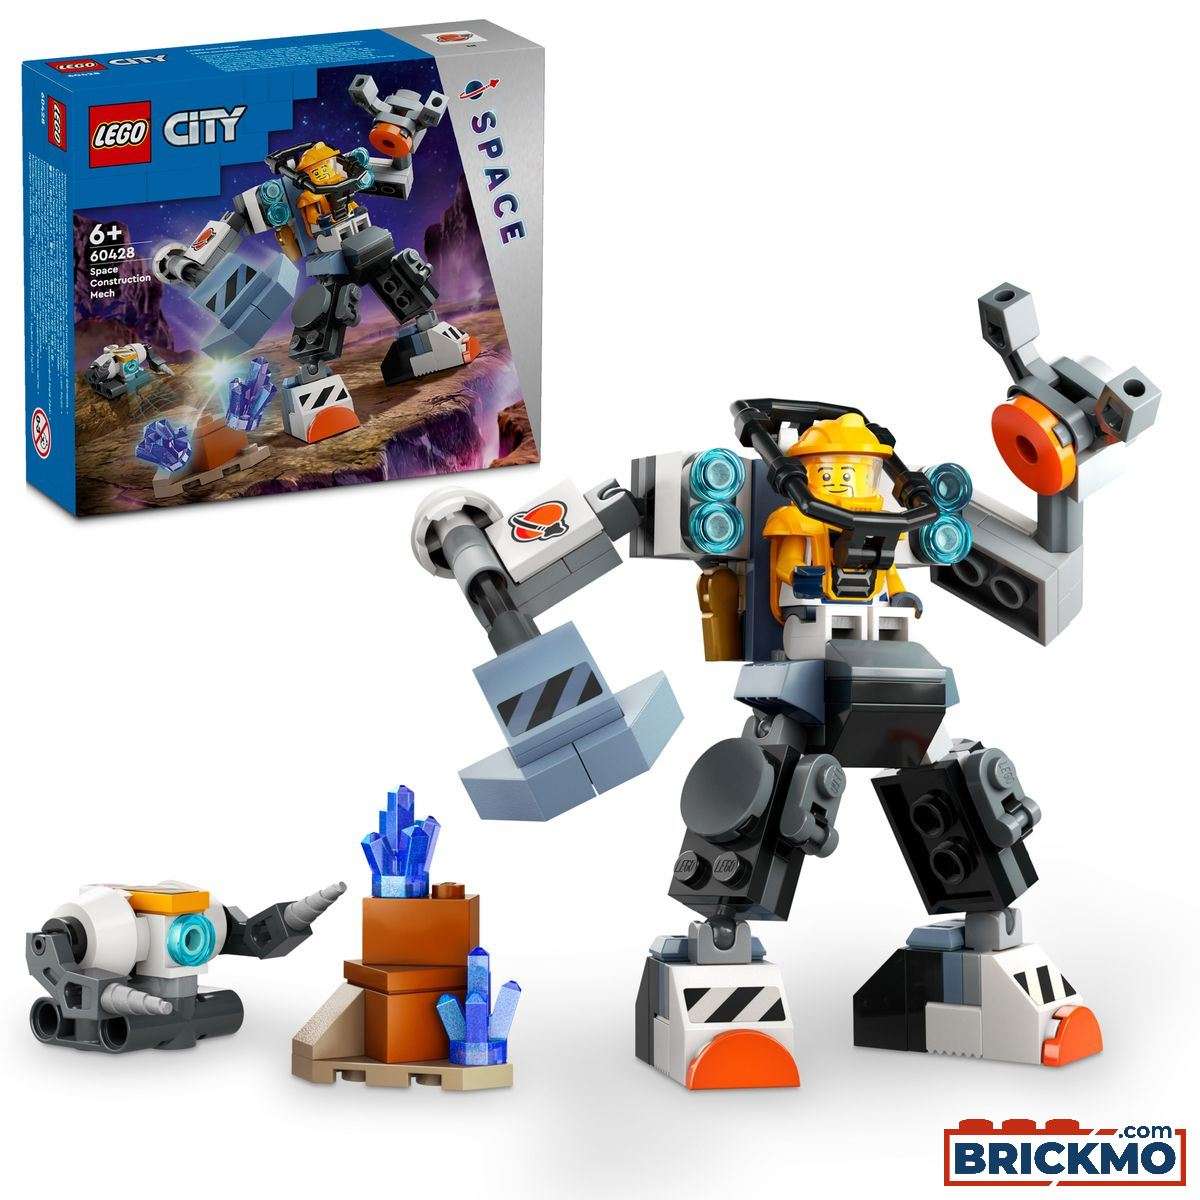 LEGO City 60428 Ruimtebouwmecha 60428